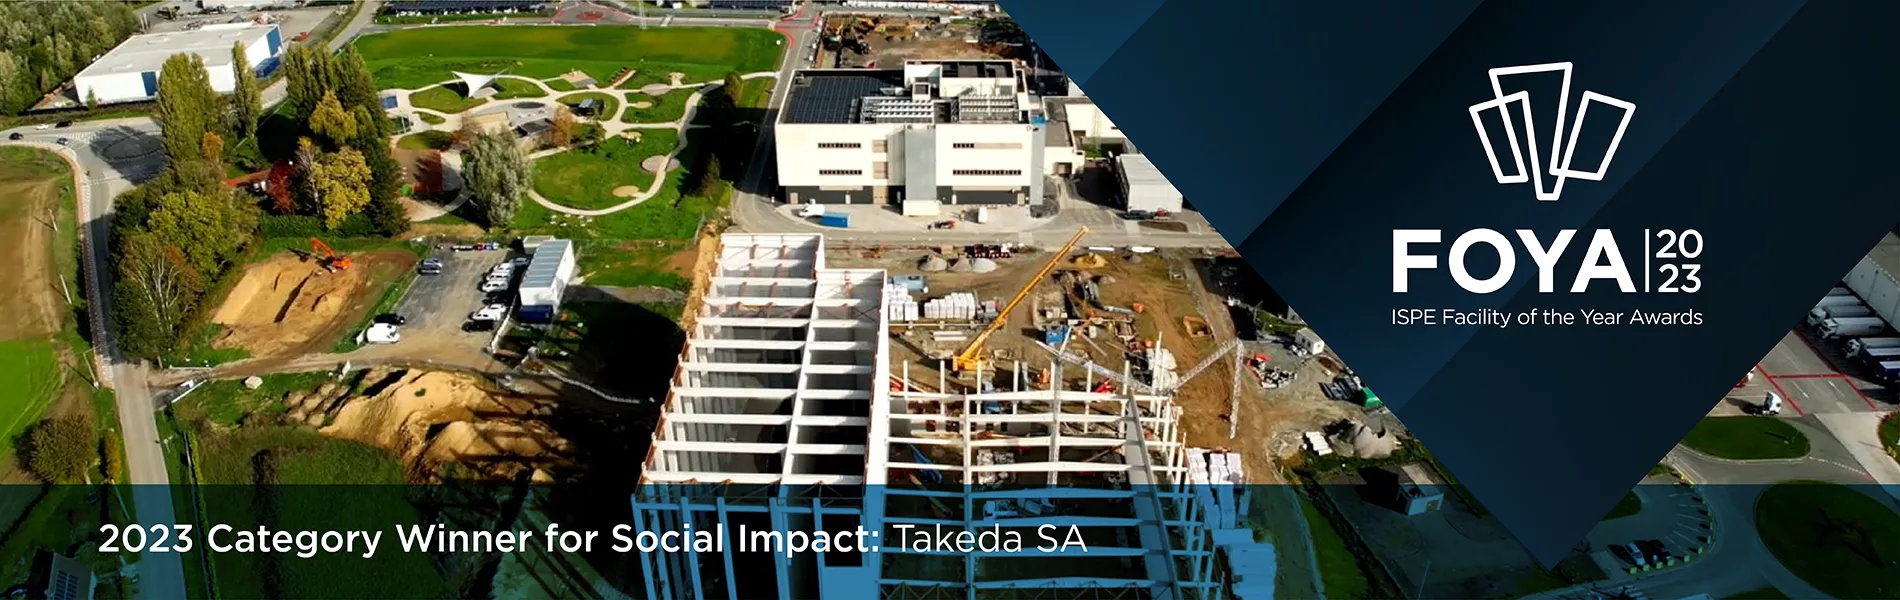 2023 Category Winners for Social Impact - Takeda SA